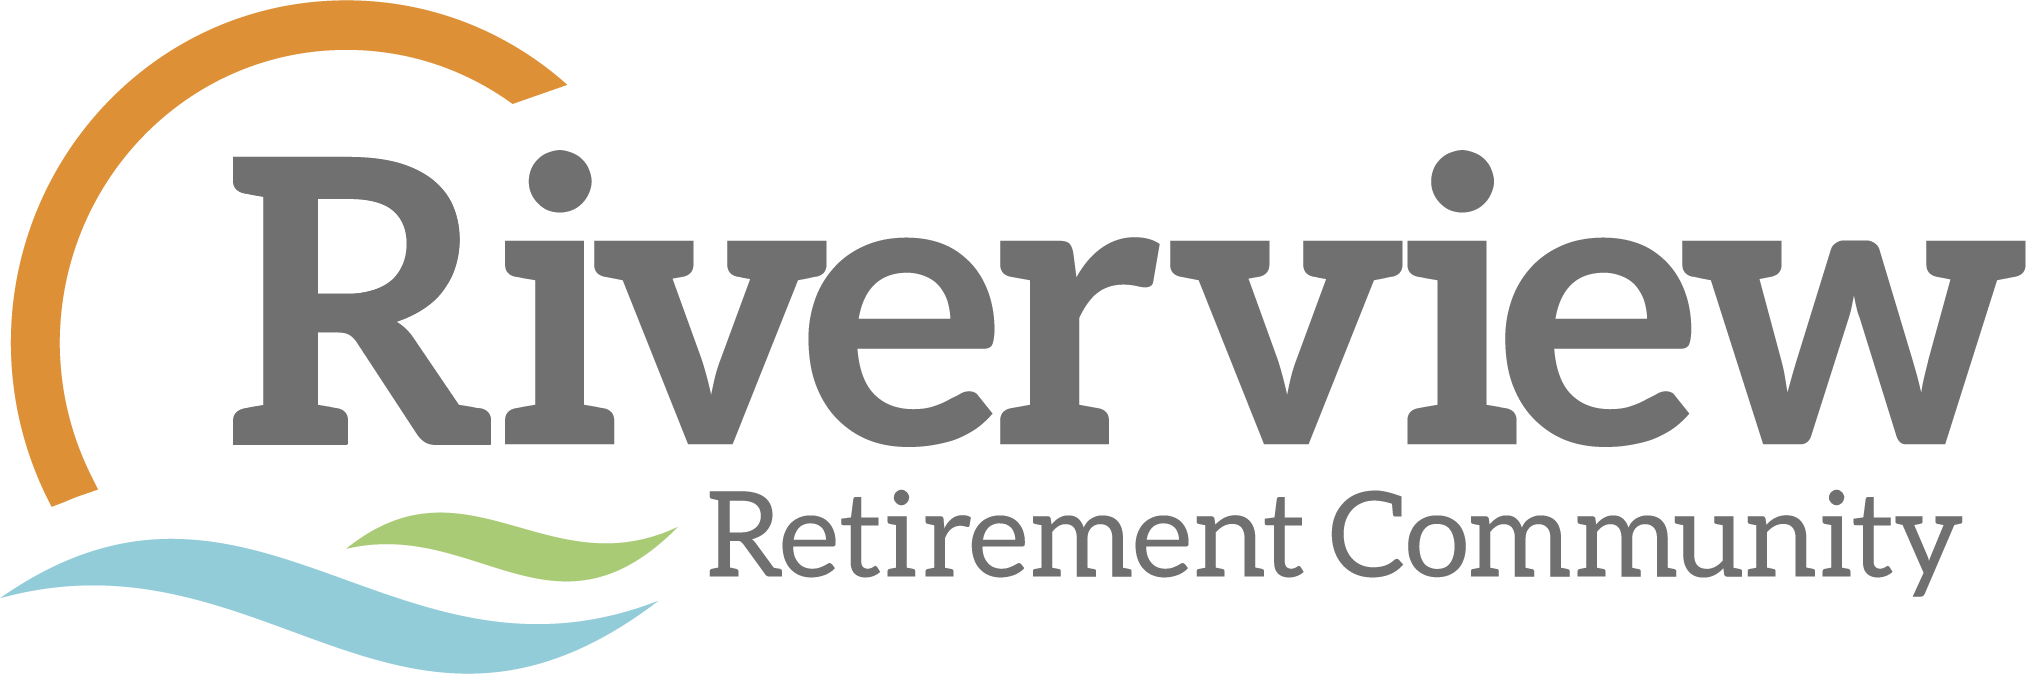 B. Riverview Retirement Community (Tier 4)